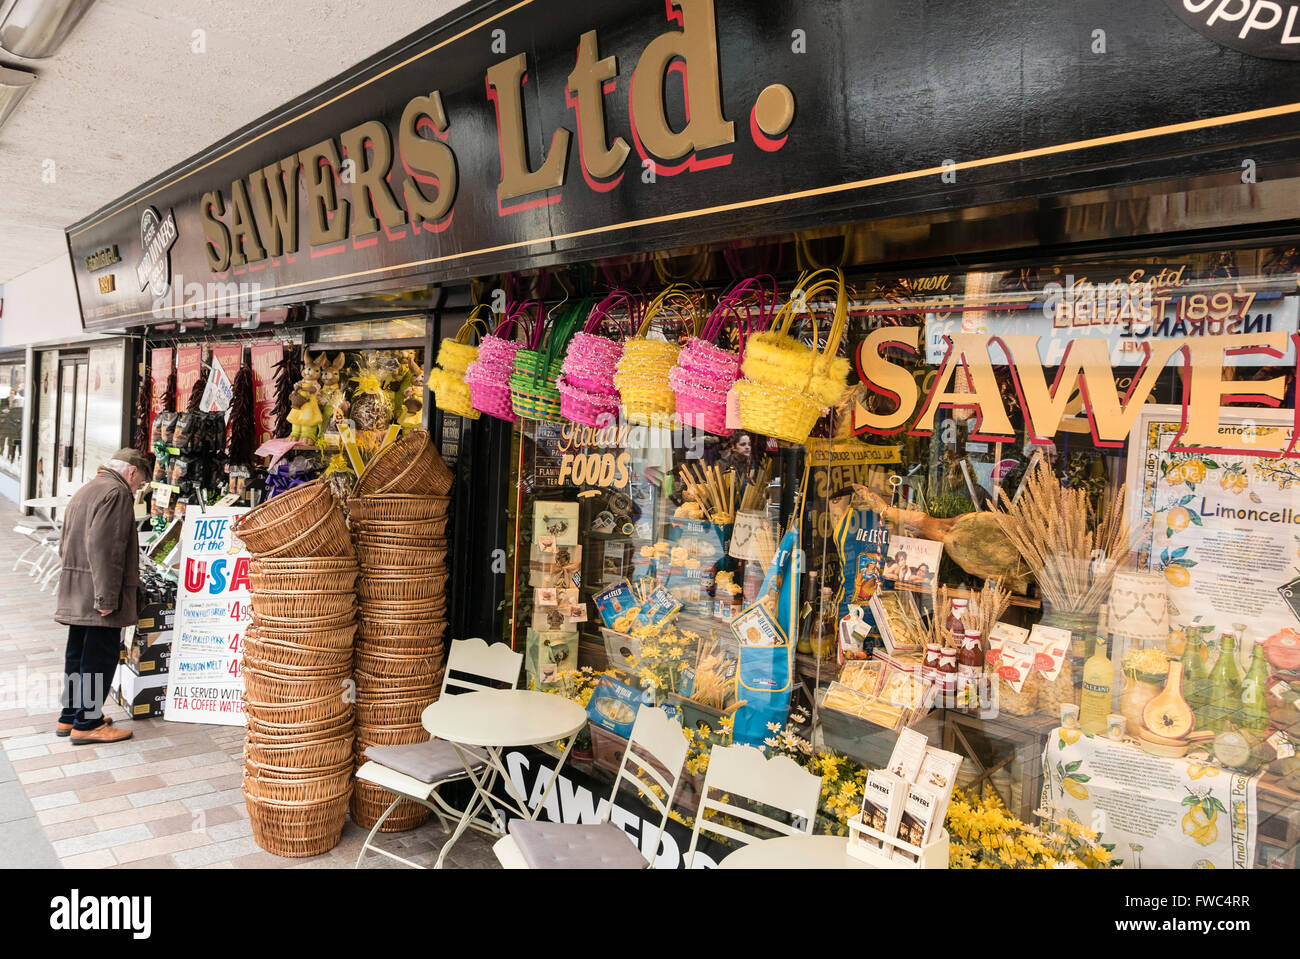 Sawers Shop Feinkostgeschäft in Belfast, ungewöhnliche, seltene und exotische Lebensmittel spezialisiert. Stockfoto